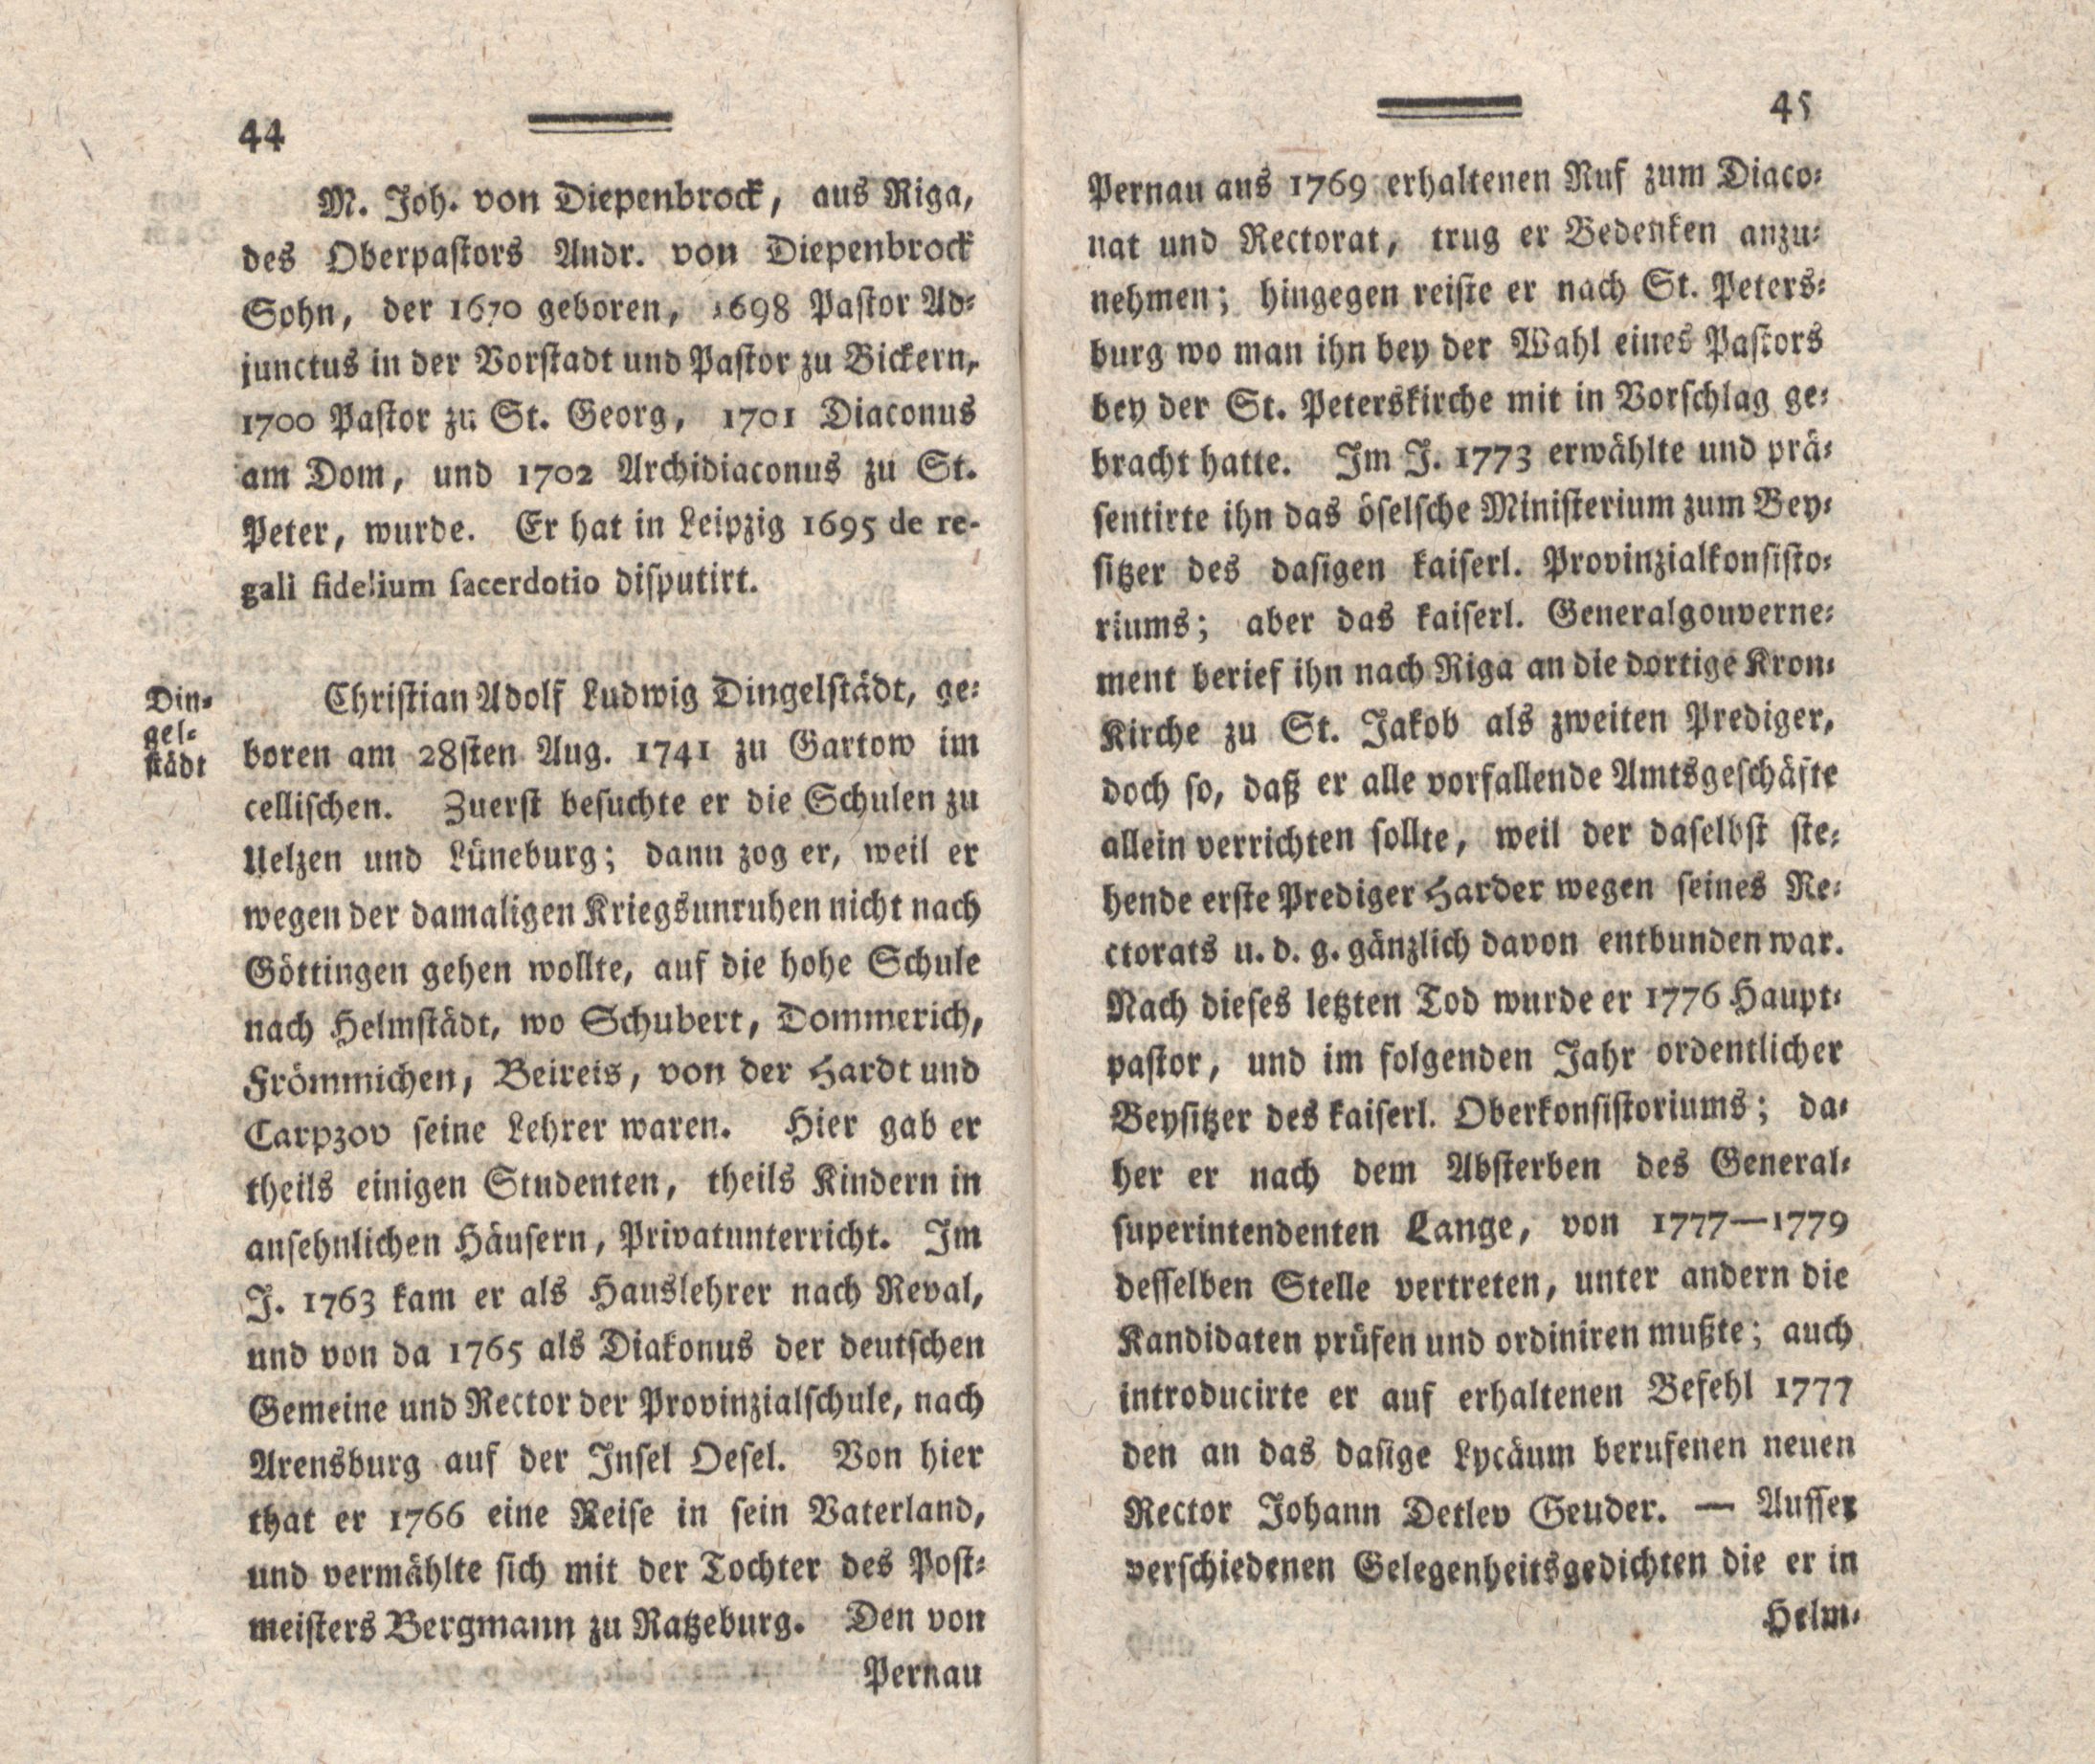 Nordische Miscellaneen [04] (1782) | 24. (44-45) Main body of text